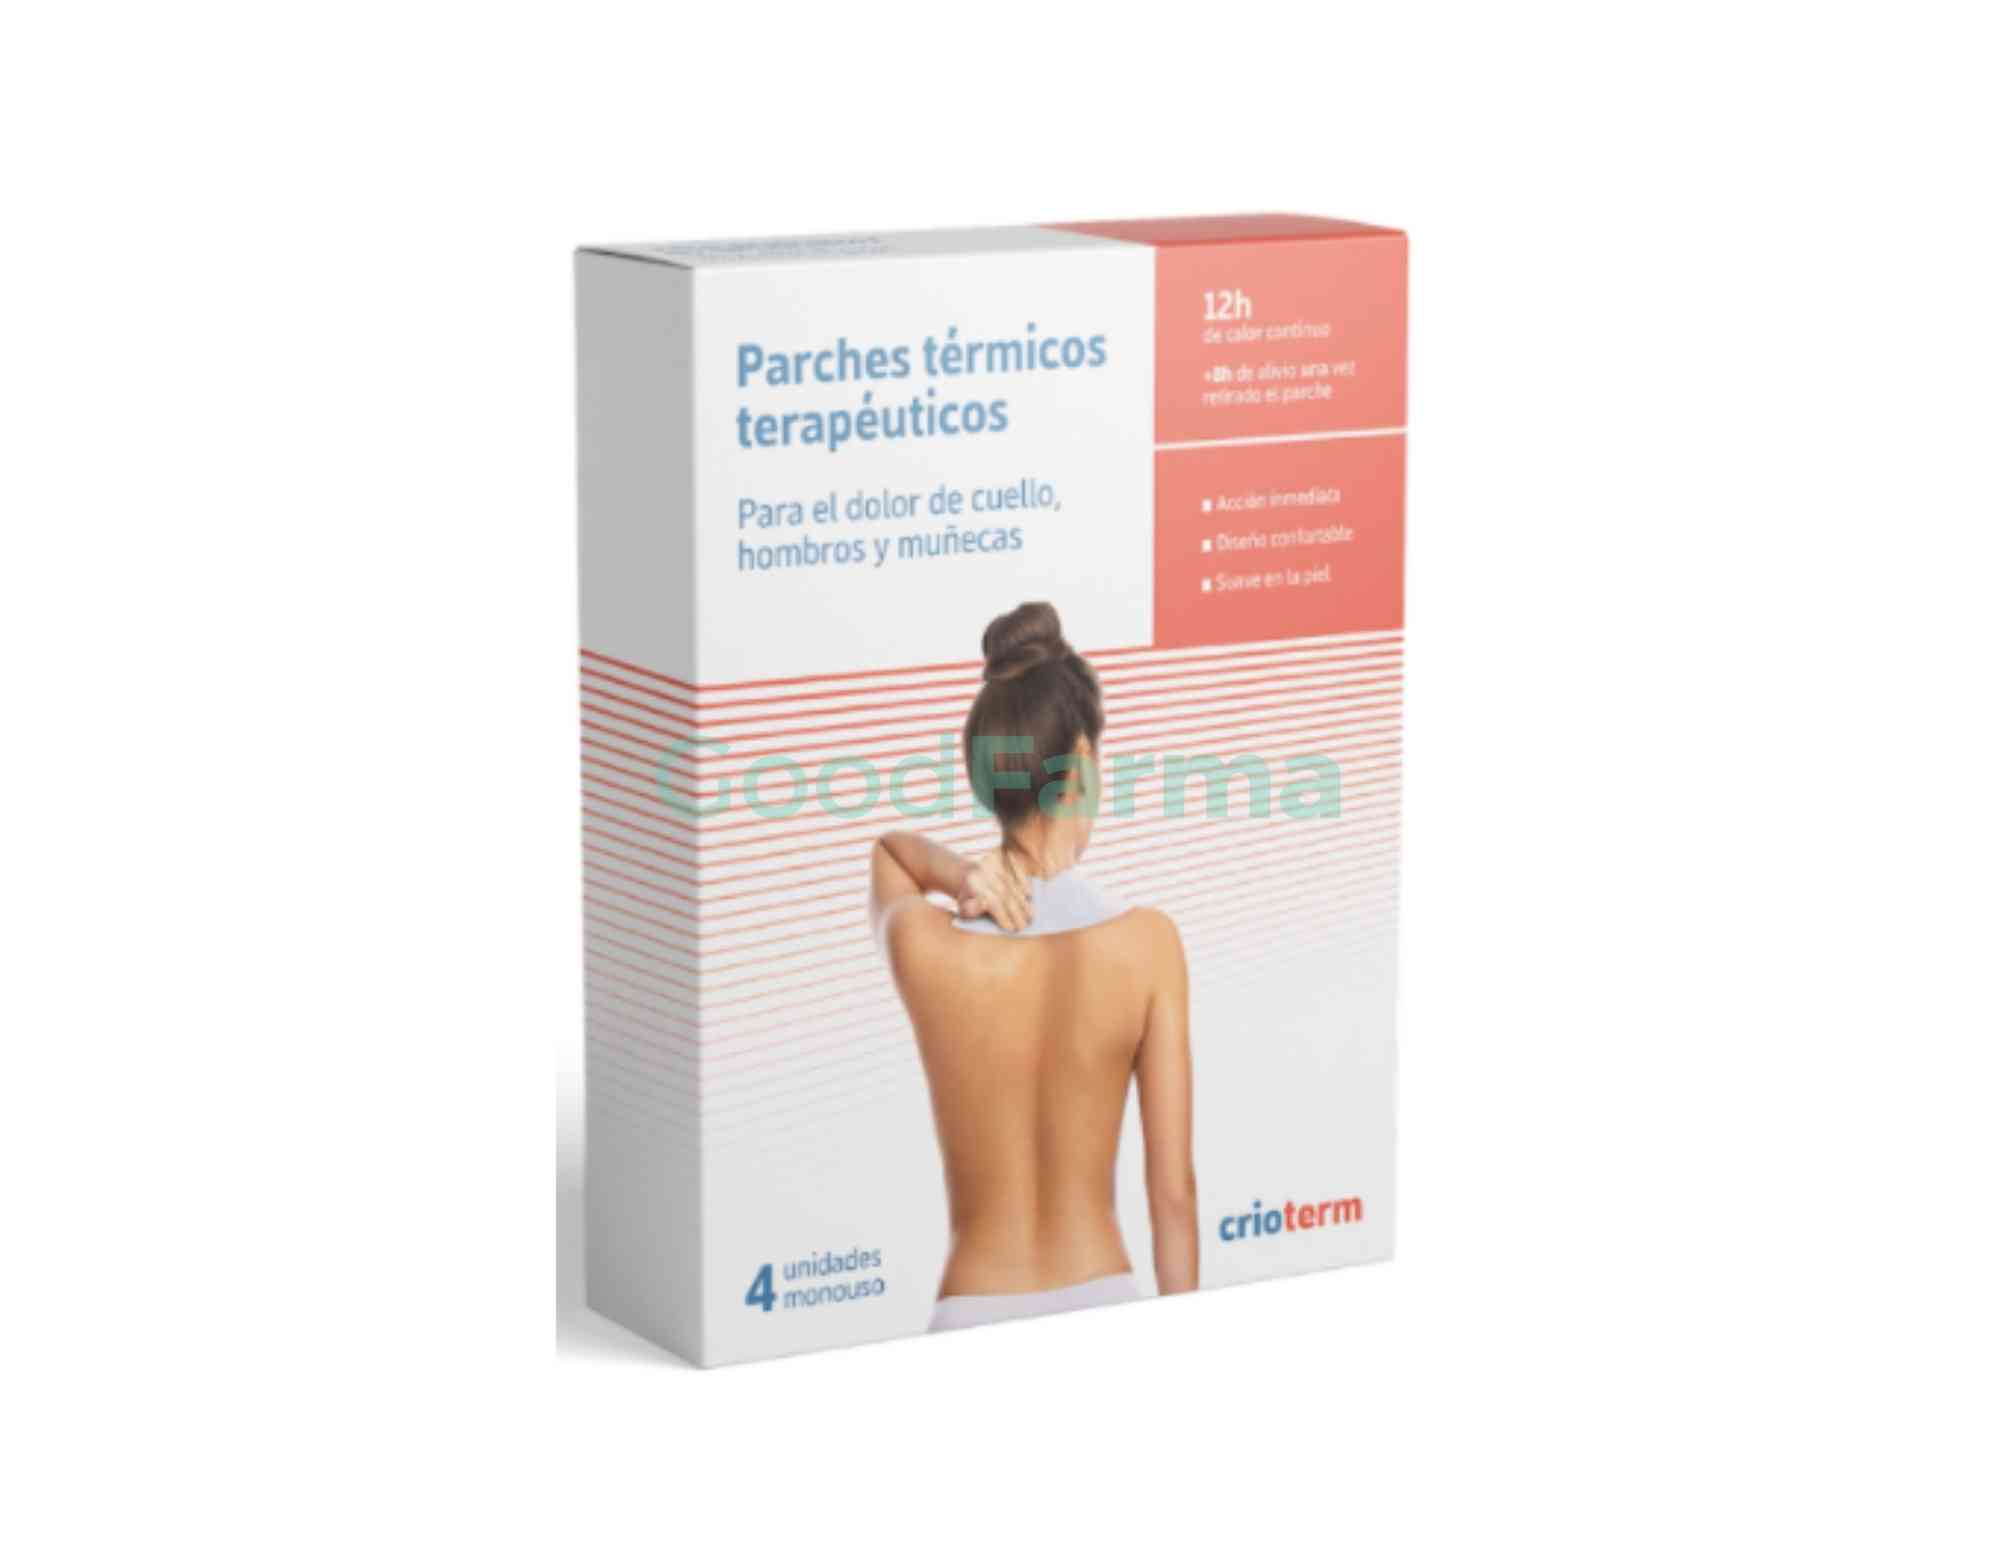 http://www.goodfarma.es/cdn/shop/products/Crioterm-4-parches-termicos-terapeuticos-para-cuello-hombros-y-munecas.jpg?v=1621414715